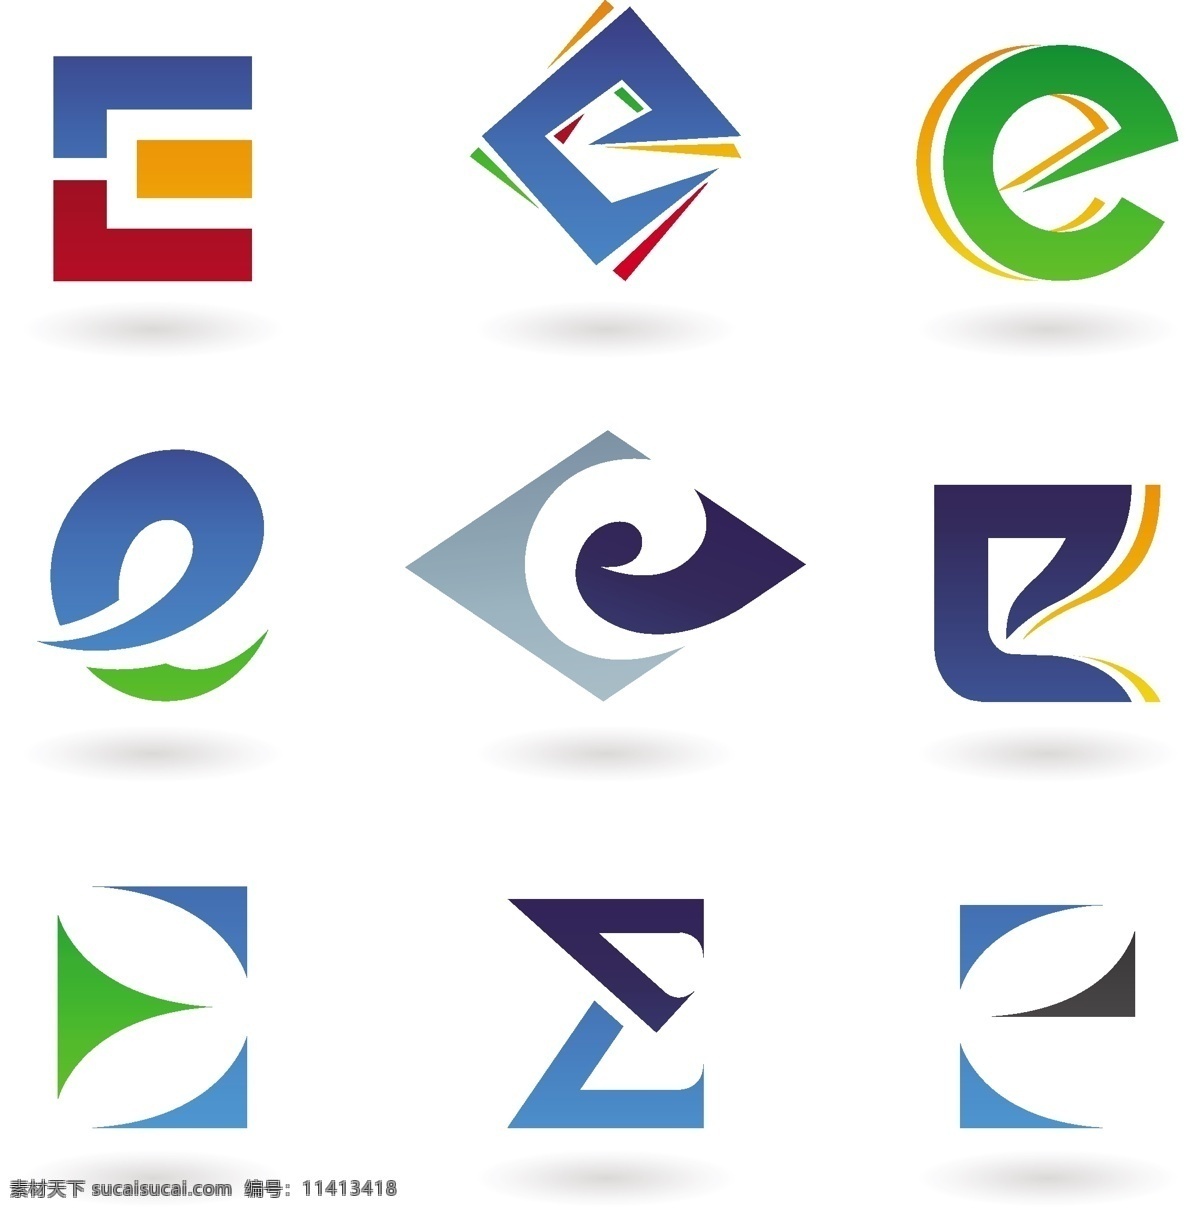 字母e 字母设计 logo 字母logo 手绘字母 彩色字母 26个英文字 大小写 字母标识 拼音 创意字母 字母 英文 英文字母 26个字母 立体字母 卡通字母 动物字母 数字 标点 符号 标点符号 卡通数字 立体数字 阿拉伯数字